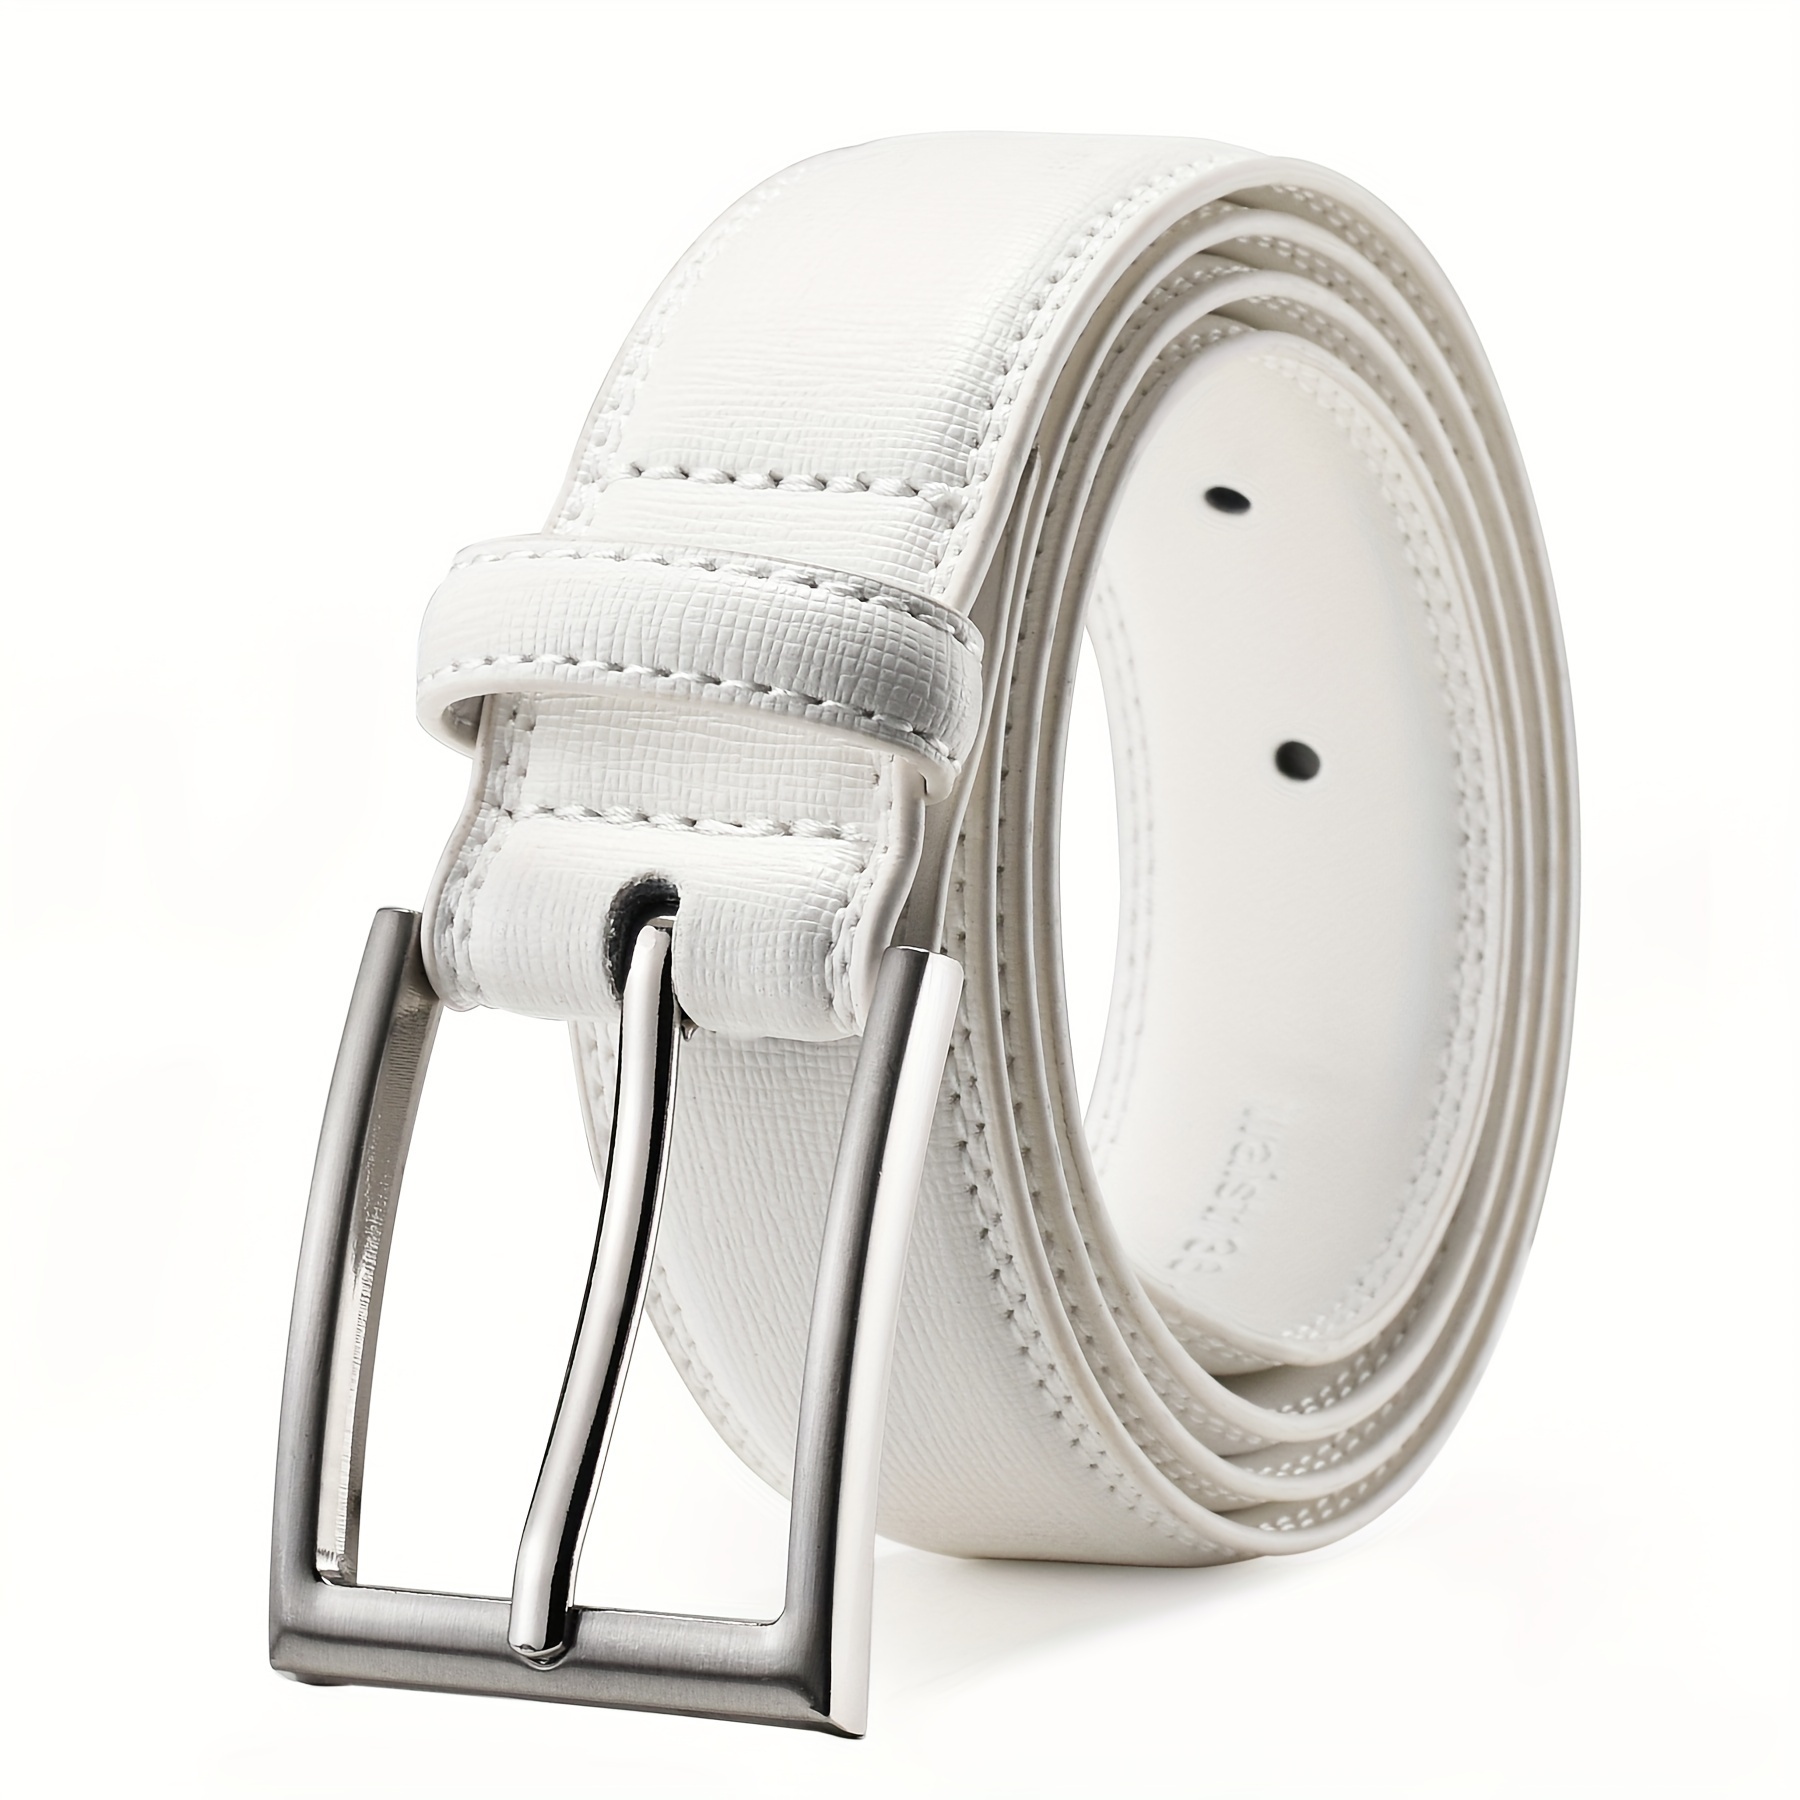 Men's Classic Fashion Automatic Buckle Design Leather Belt Business Belt